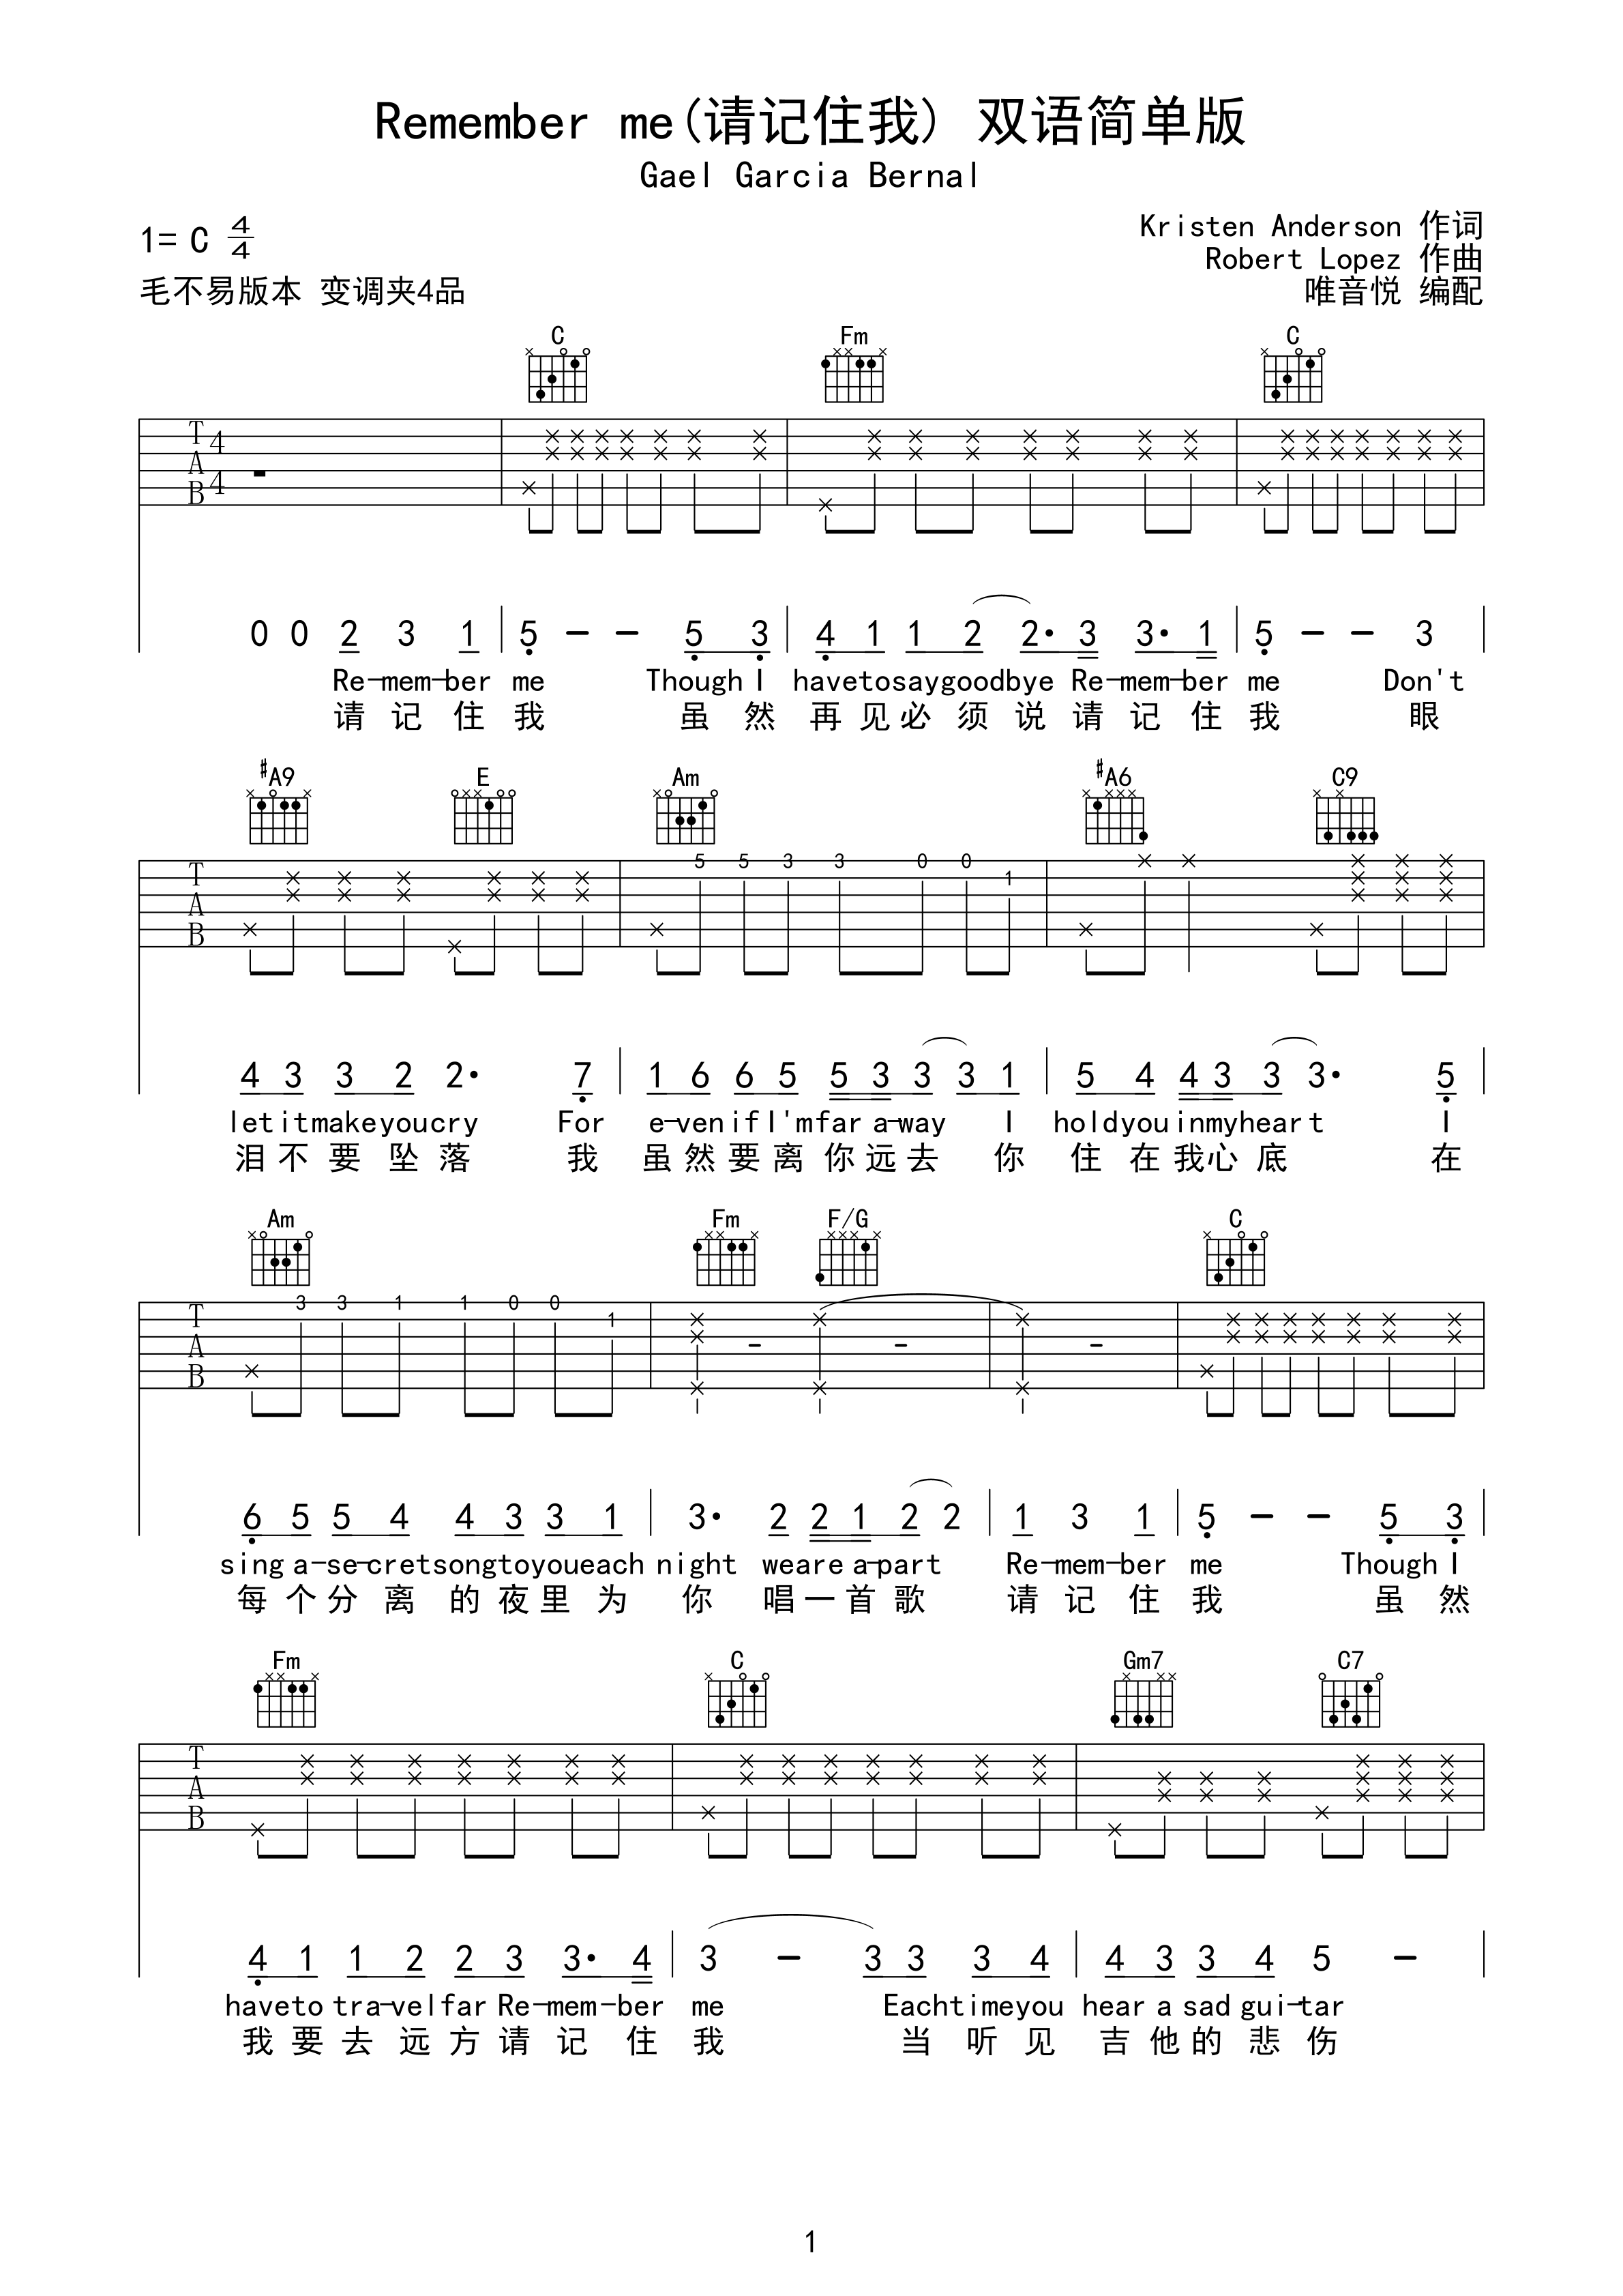 寻梦环游记【Remember Me吉他谱】_在线免费打印下载-爱弹琴乐谱网